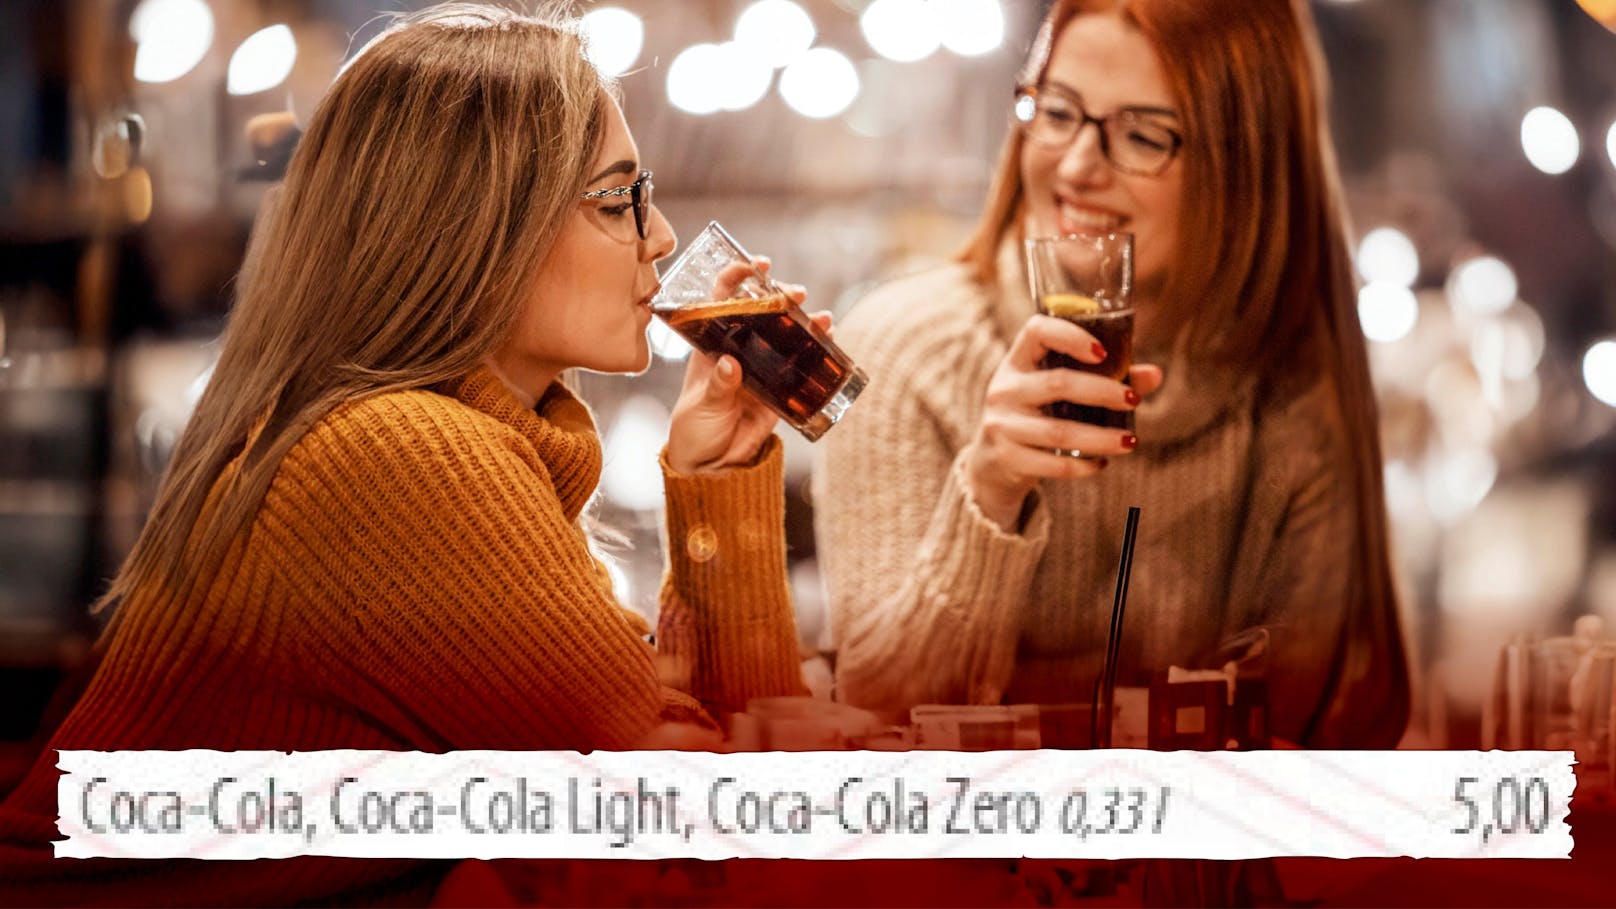 Kaffeehaus verlangt für kleine Flasche Cola 5 Euro